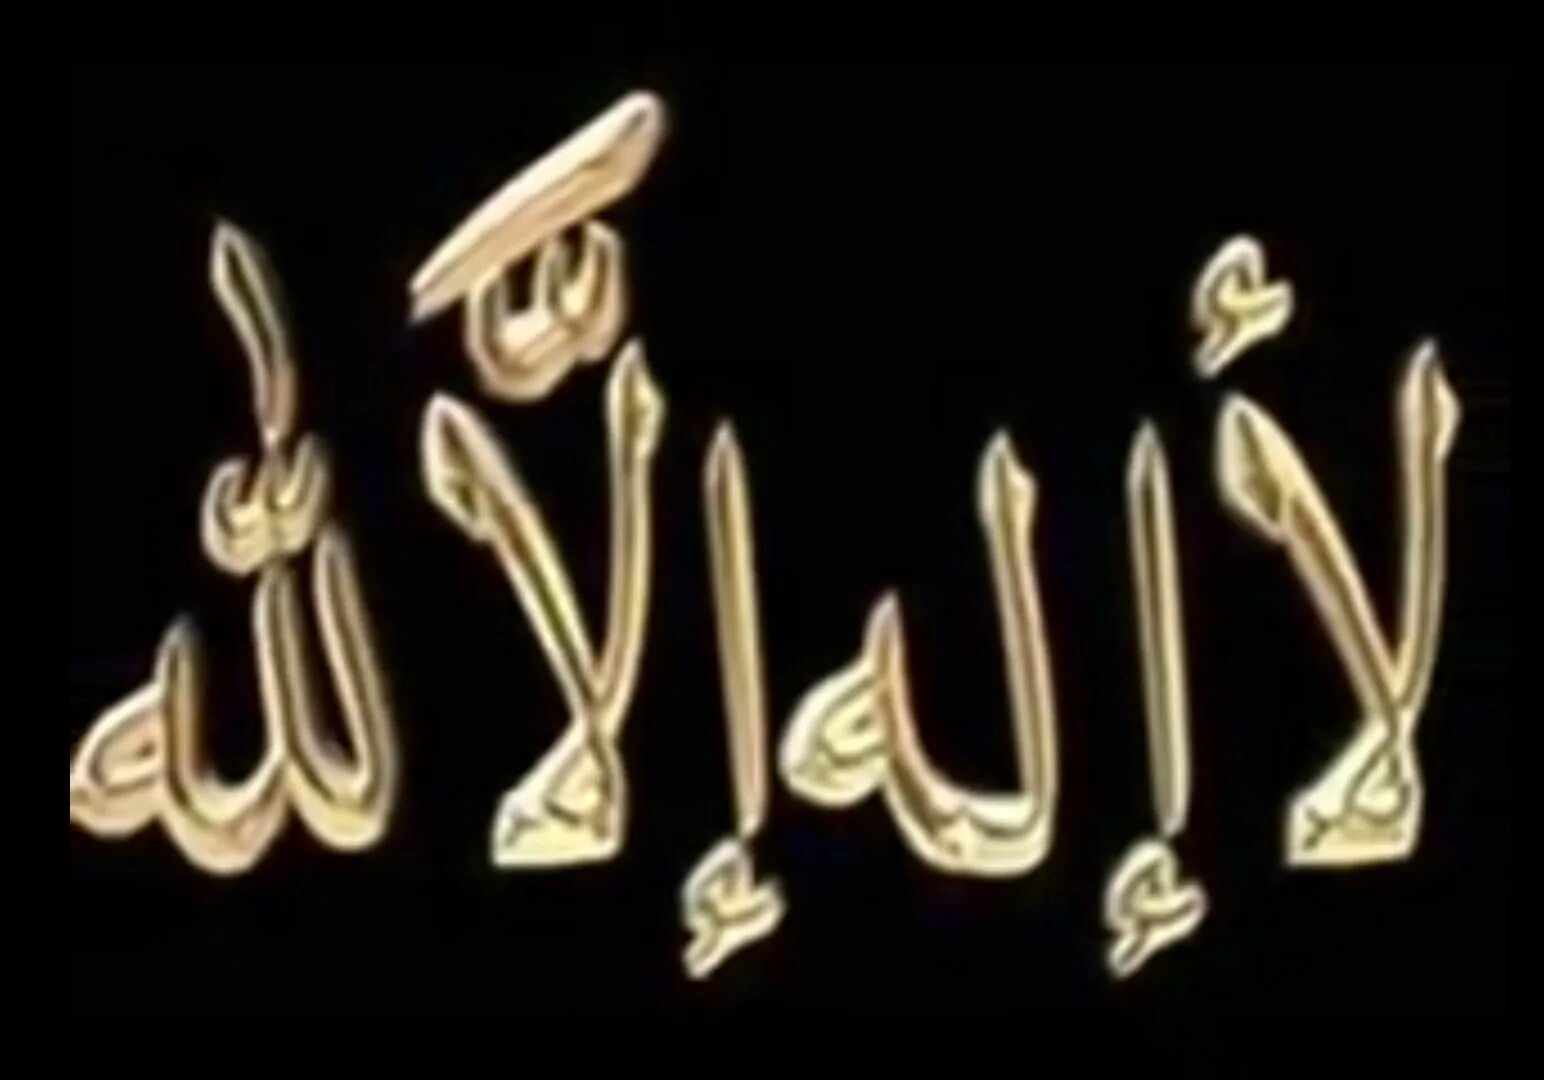 Нашиды иллалах. Лаа илаха иллалах. Нет Бога кроме Аллаха на арабском. Ля иляха ИЛЛЯЛЛАХ на арабском.